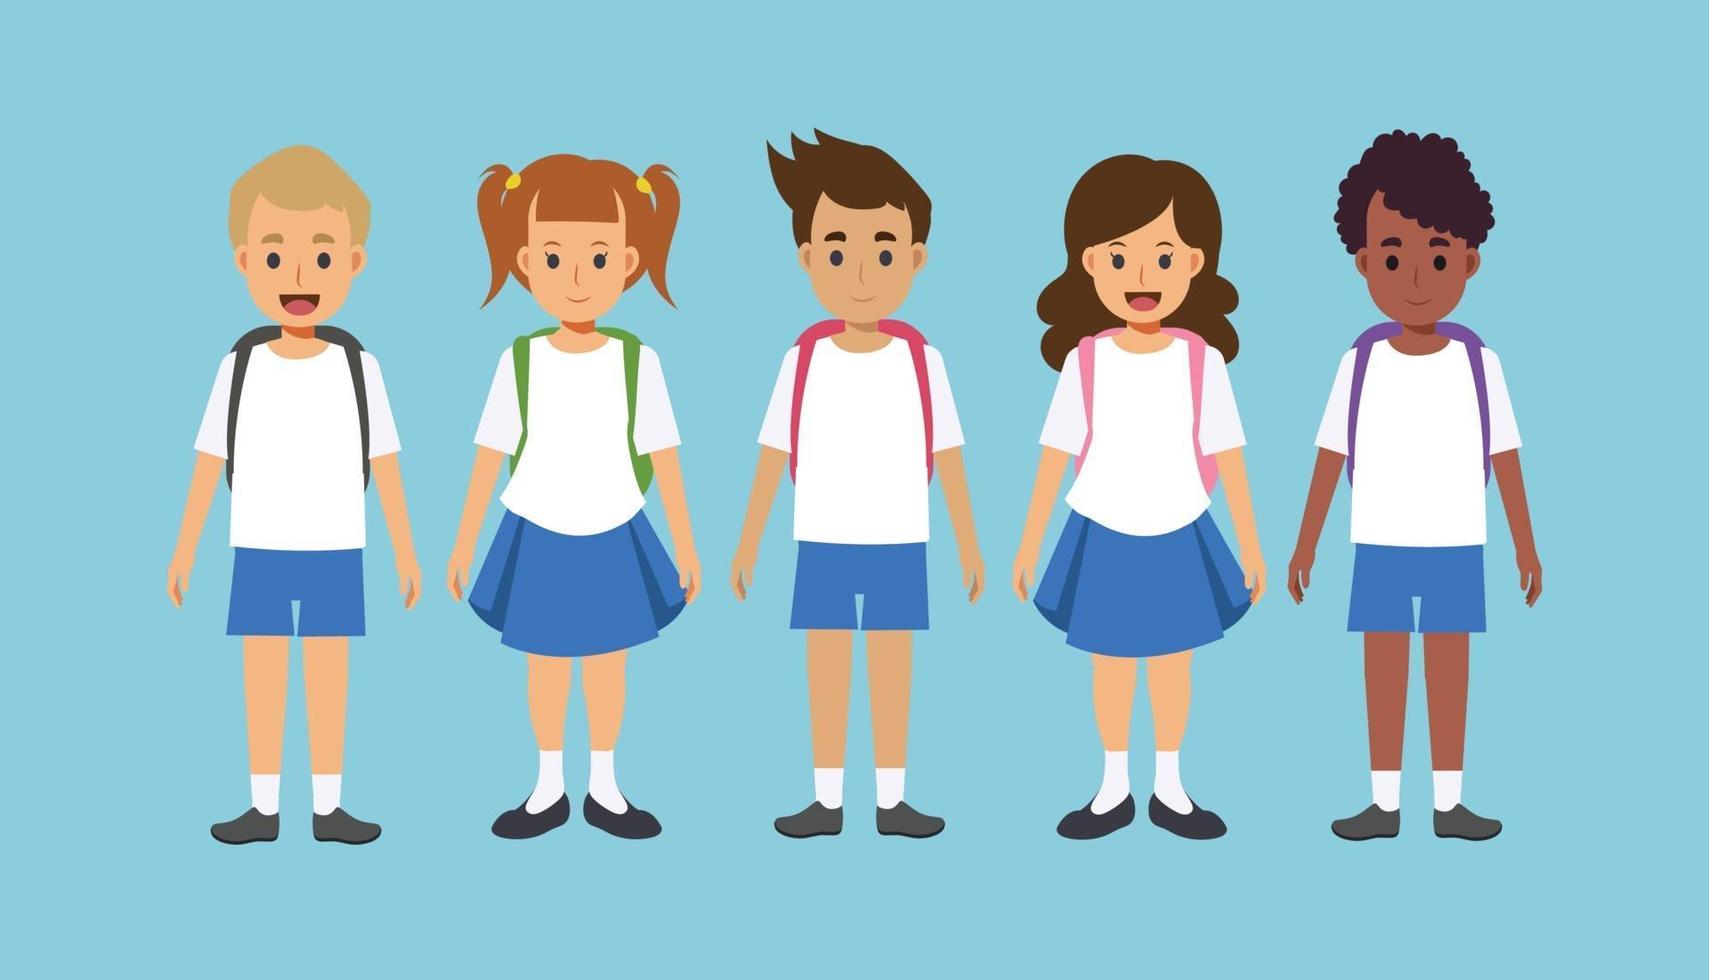 children wearing school uniform with backpacks. vector